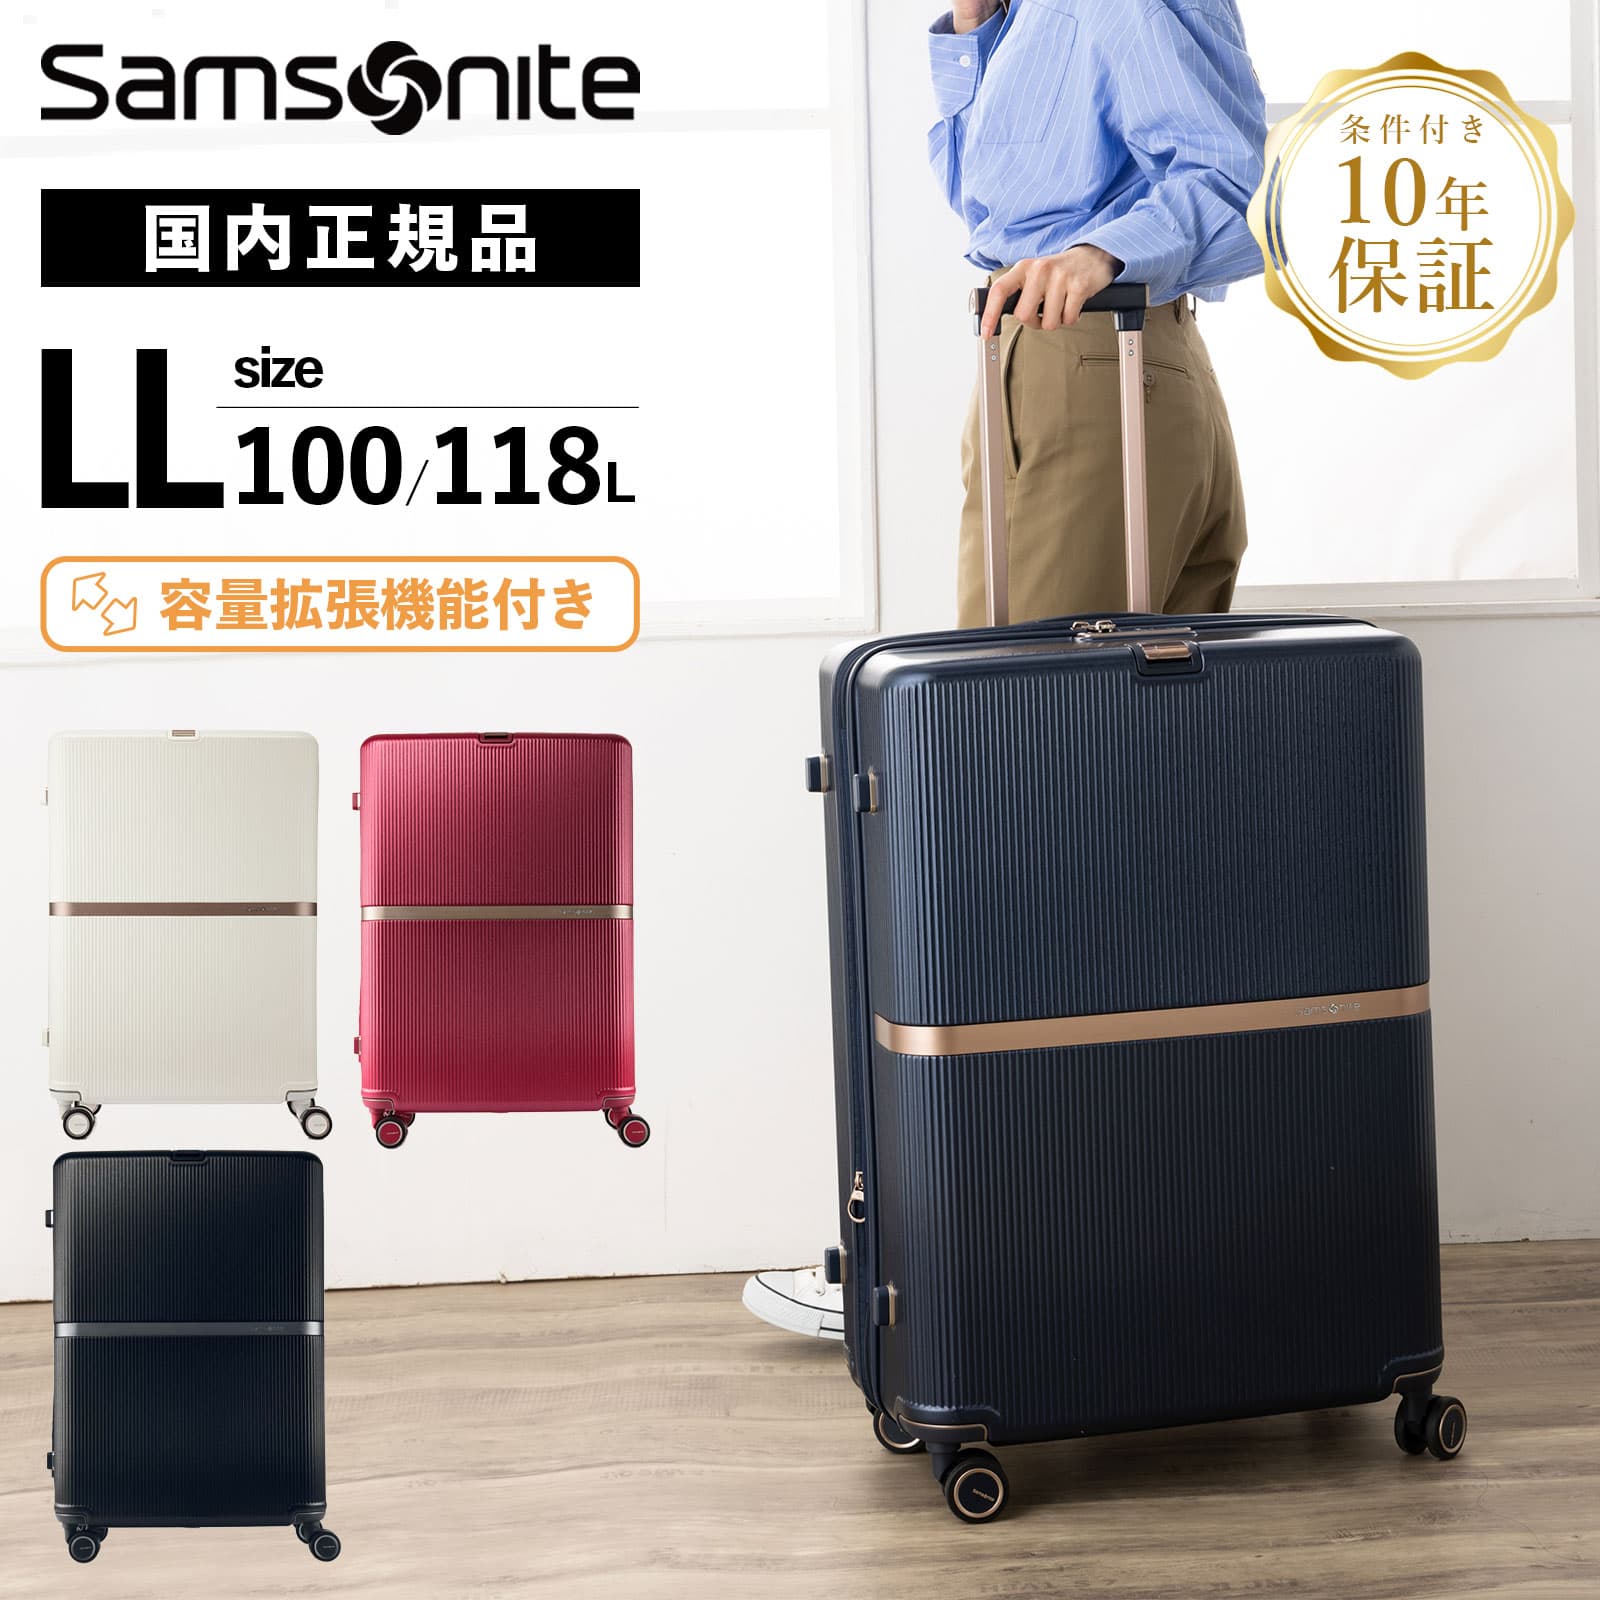 正規品 サムソナイト Samsonite スーツケース LLサイズ キャリーバッグ キャリーケース ハードケース ミンター MINTER スピナー75 メンズ レディース 容量拡張 大容量 軽量 4輪ダブルキャスター TSA 7泊以上 1週間 旅行 おすすめ シンプル おしゃれ かわいい ブランド